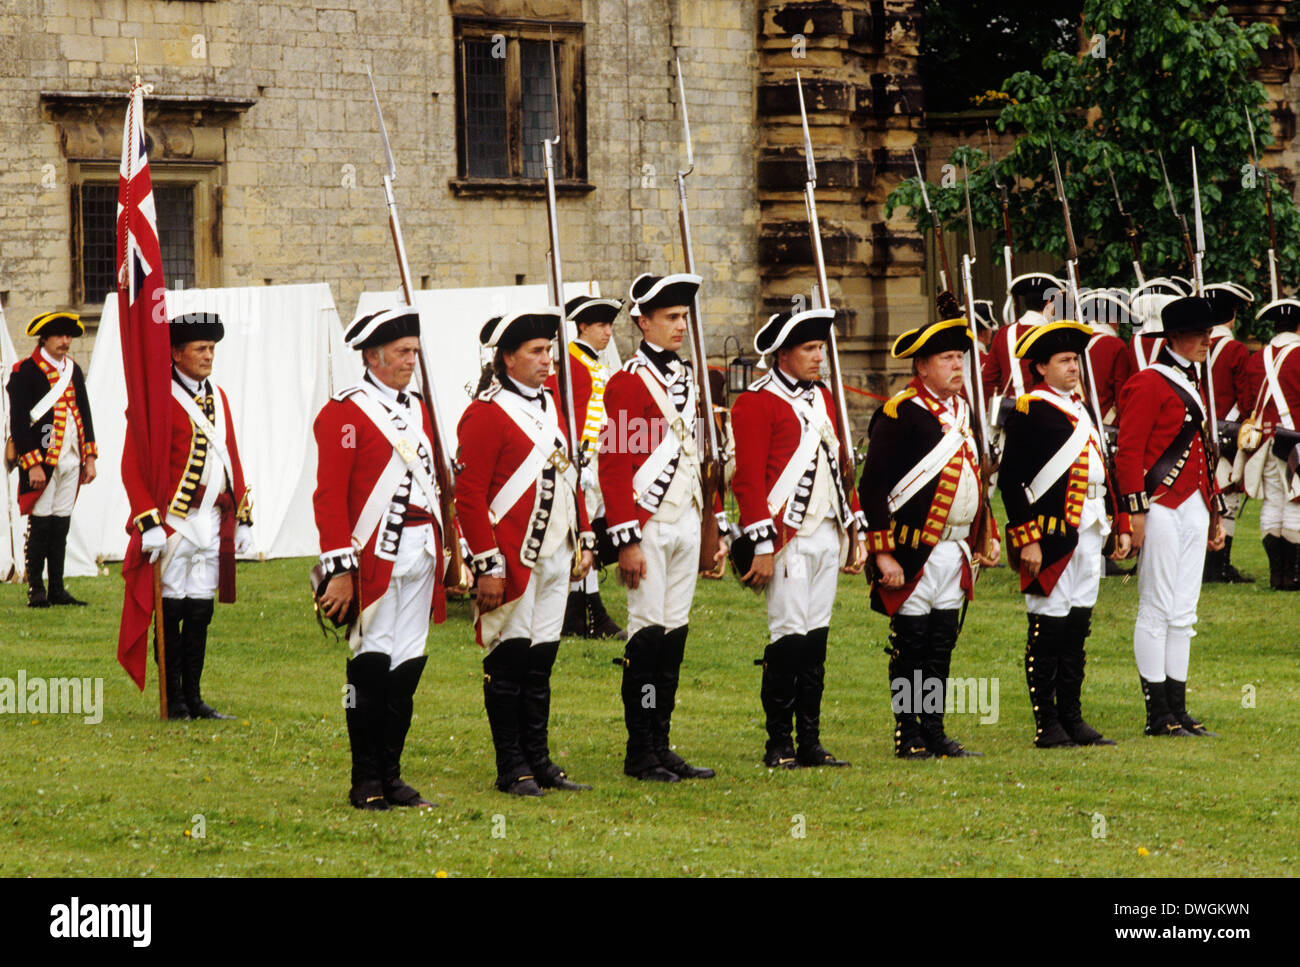 Des soldats britanniques, 1780 fusils avec baïonnettes, ci-joint, reconstitution historique soldat armée anglaise uniformes uniforme fin du 18e siècle Angleterre UK musket redcoats Banque D'Images